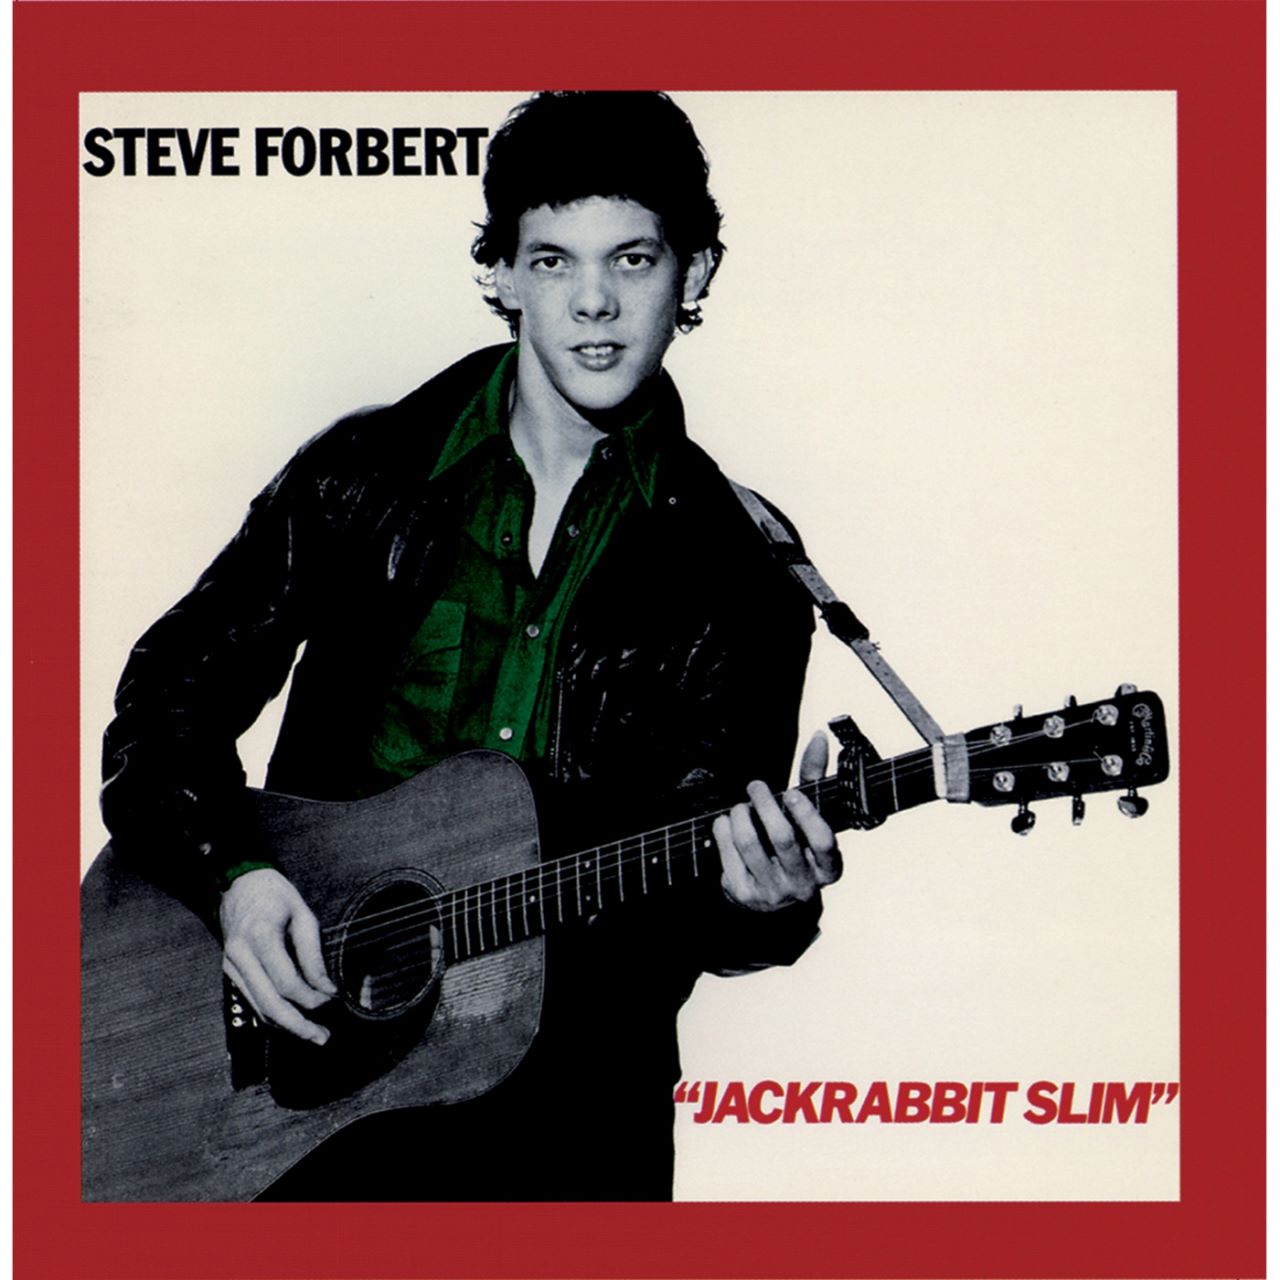 Steve Forbert - Jackrabbit Slim cover album